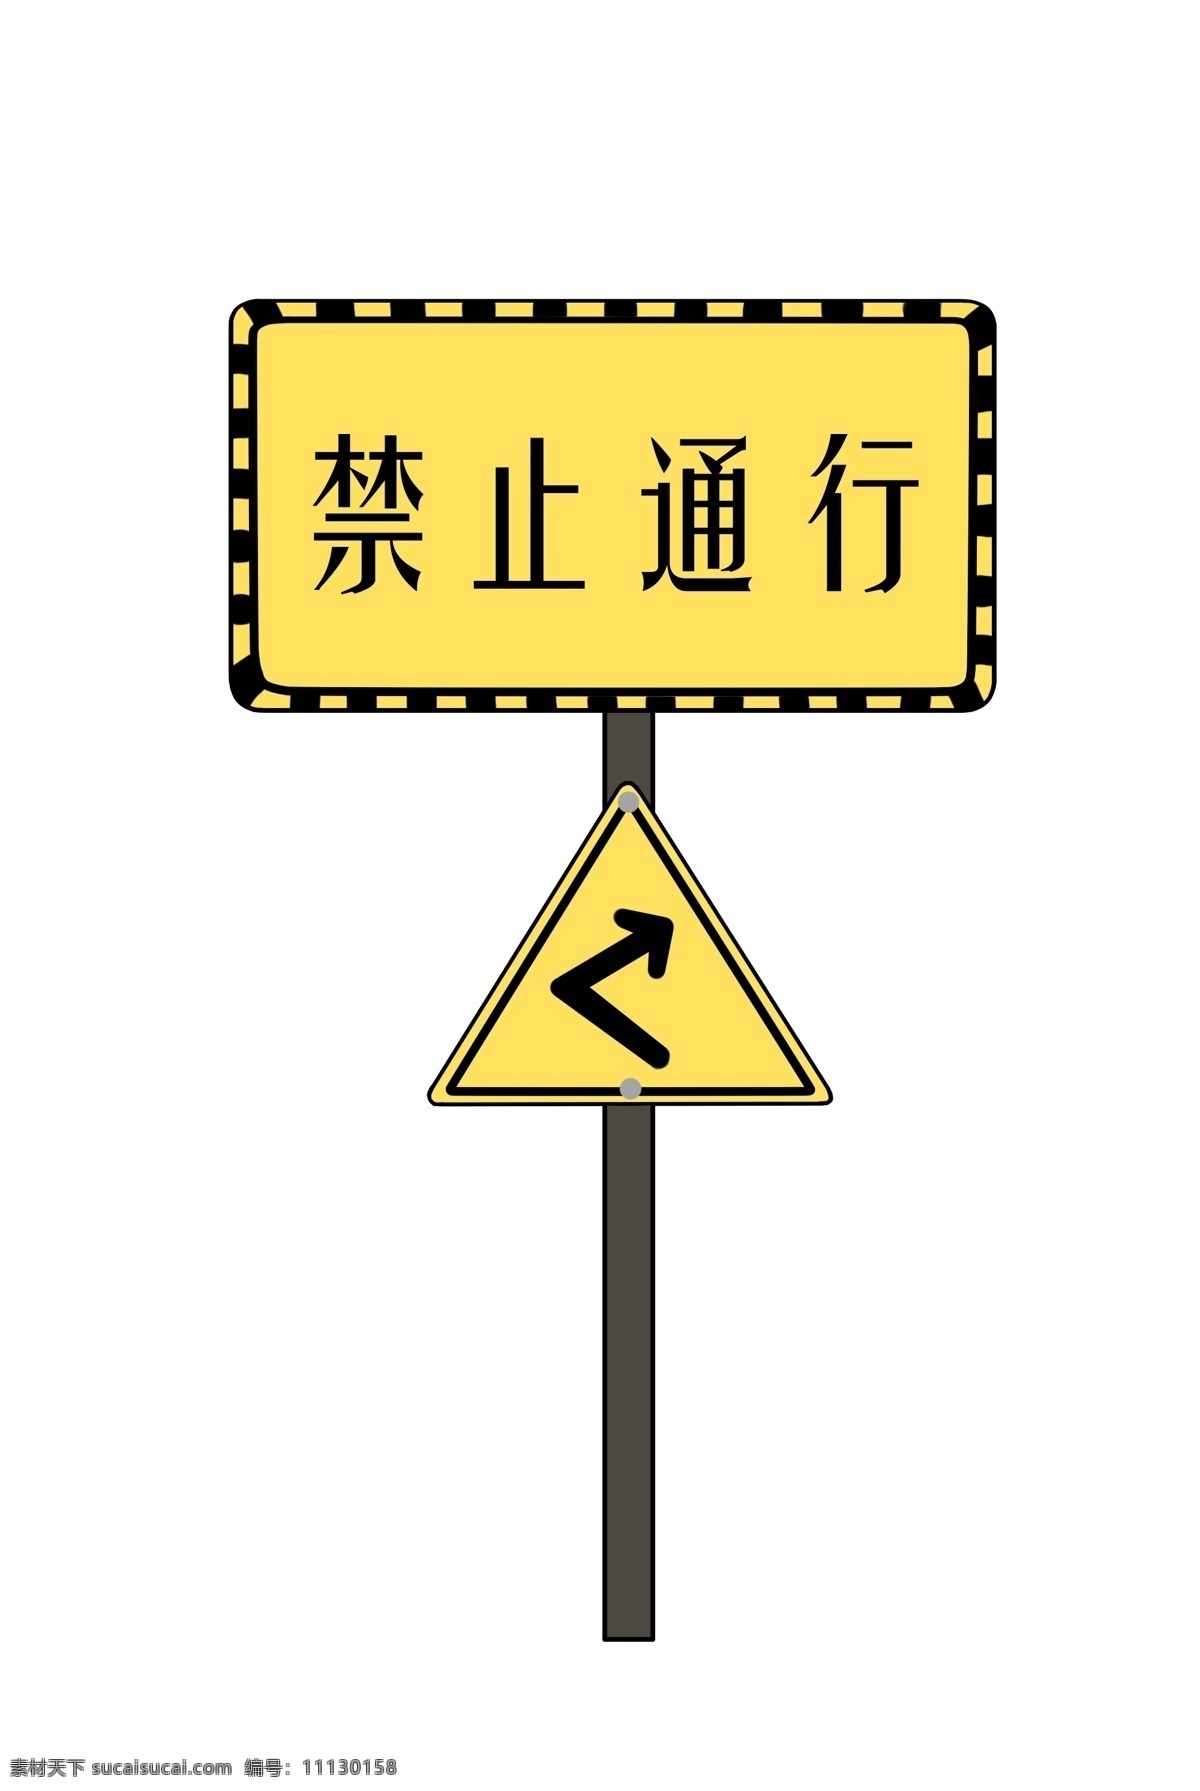 警示牌 禁止 通行 插画 禁止通行 禁止通行插画 黄色 黄色警示牌 箭头 道路警示牌 警示牌插画